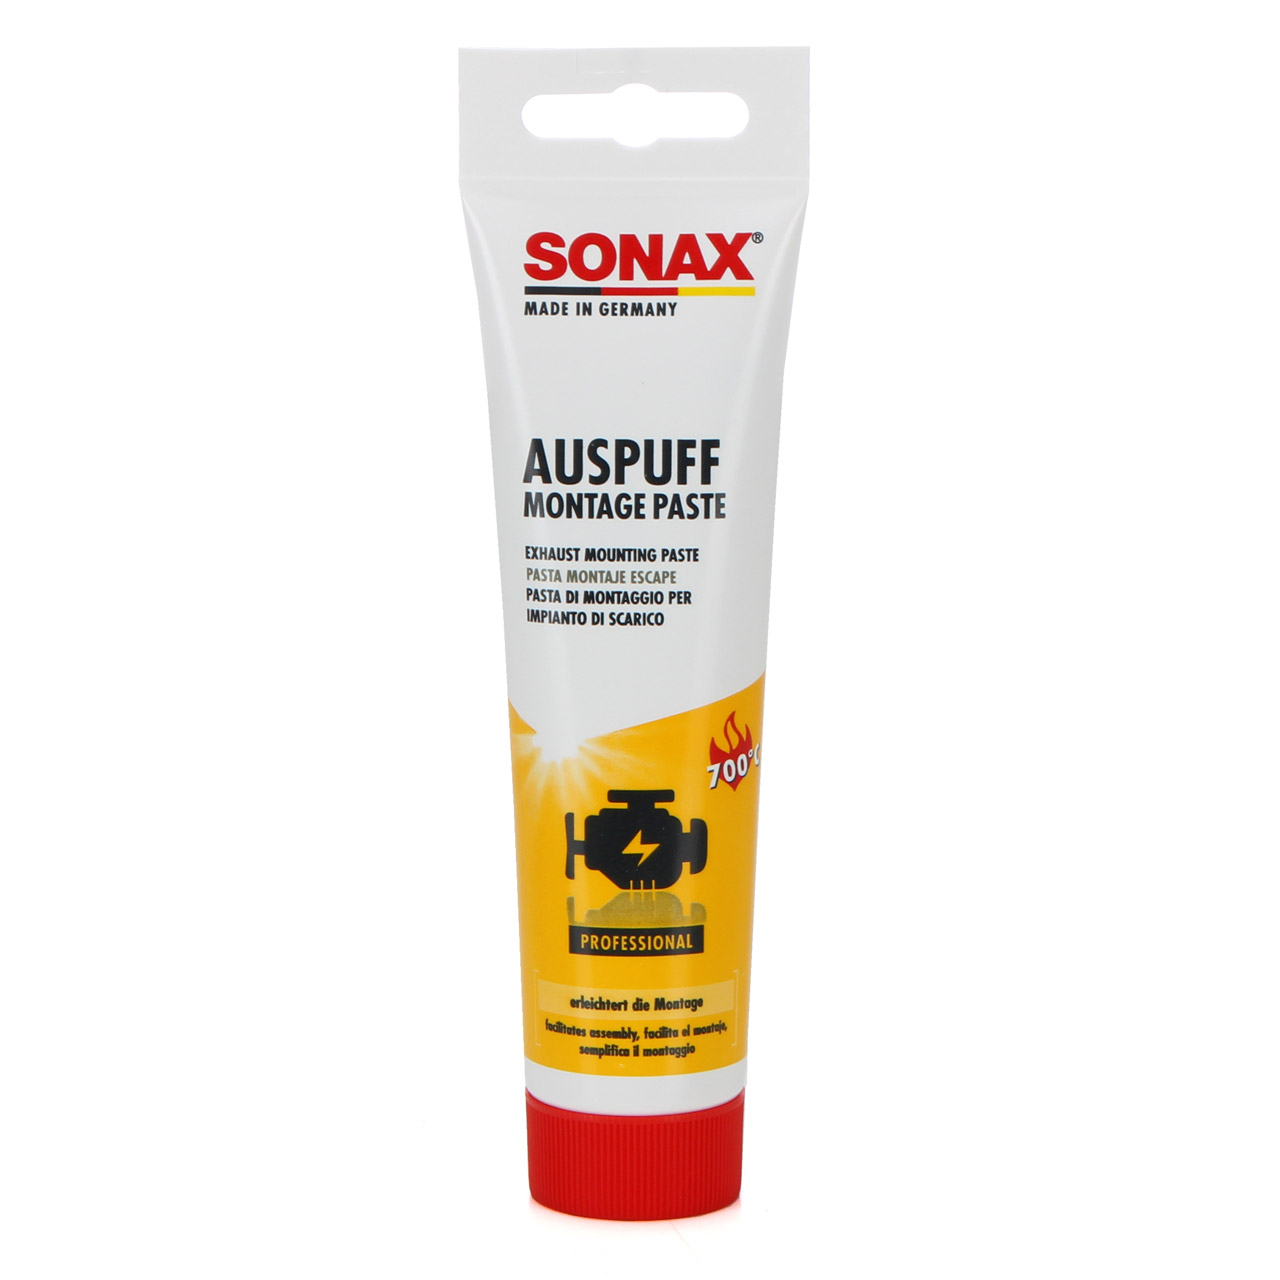 SONAX AuspuffMontagePaste Auspuff-Montage-Paste 170g 552000